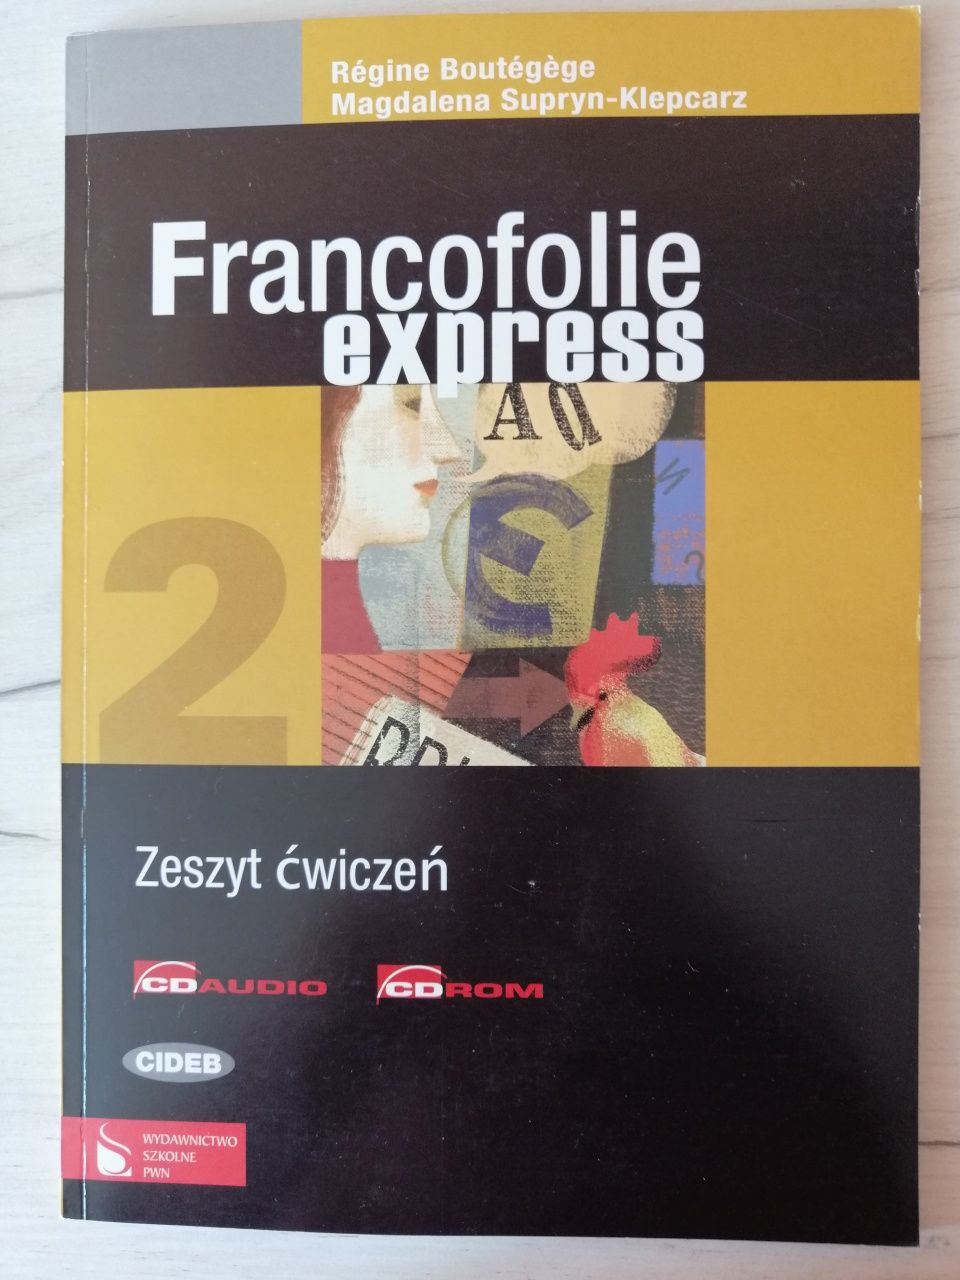 Ćwiczenia Francofolie express 2 + płyta CD z nagraniami